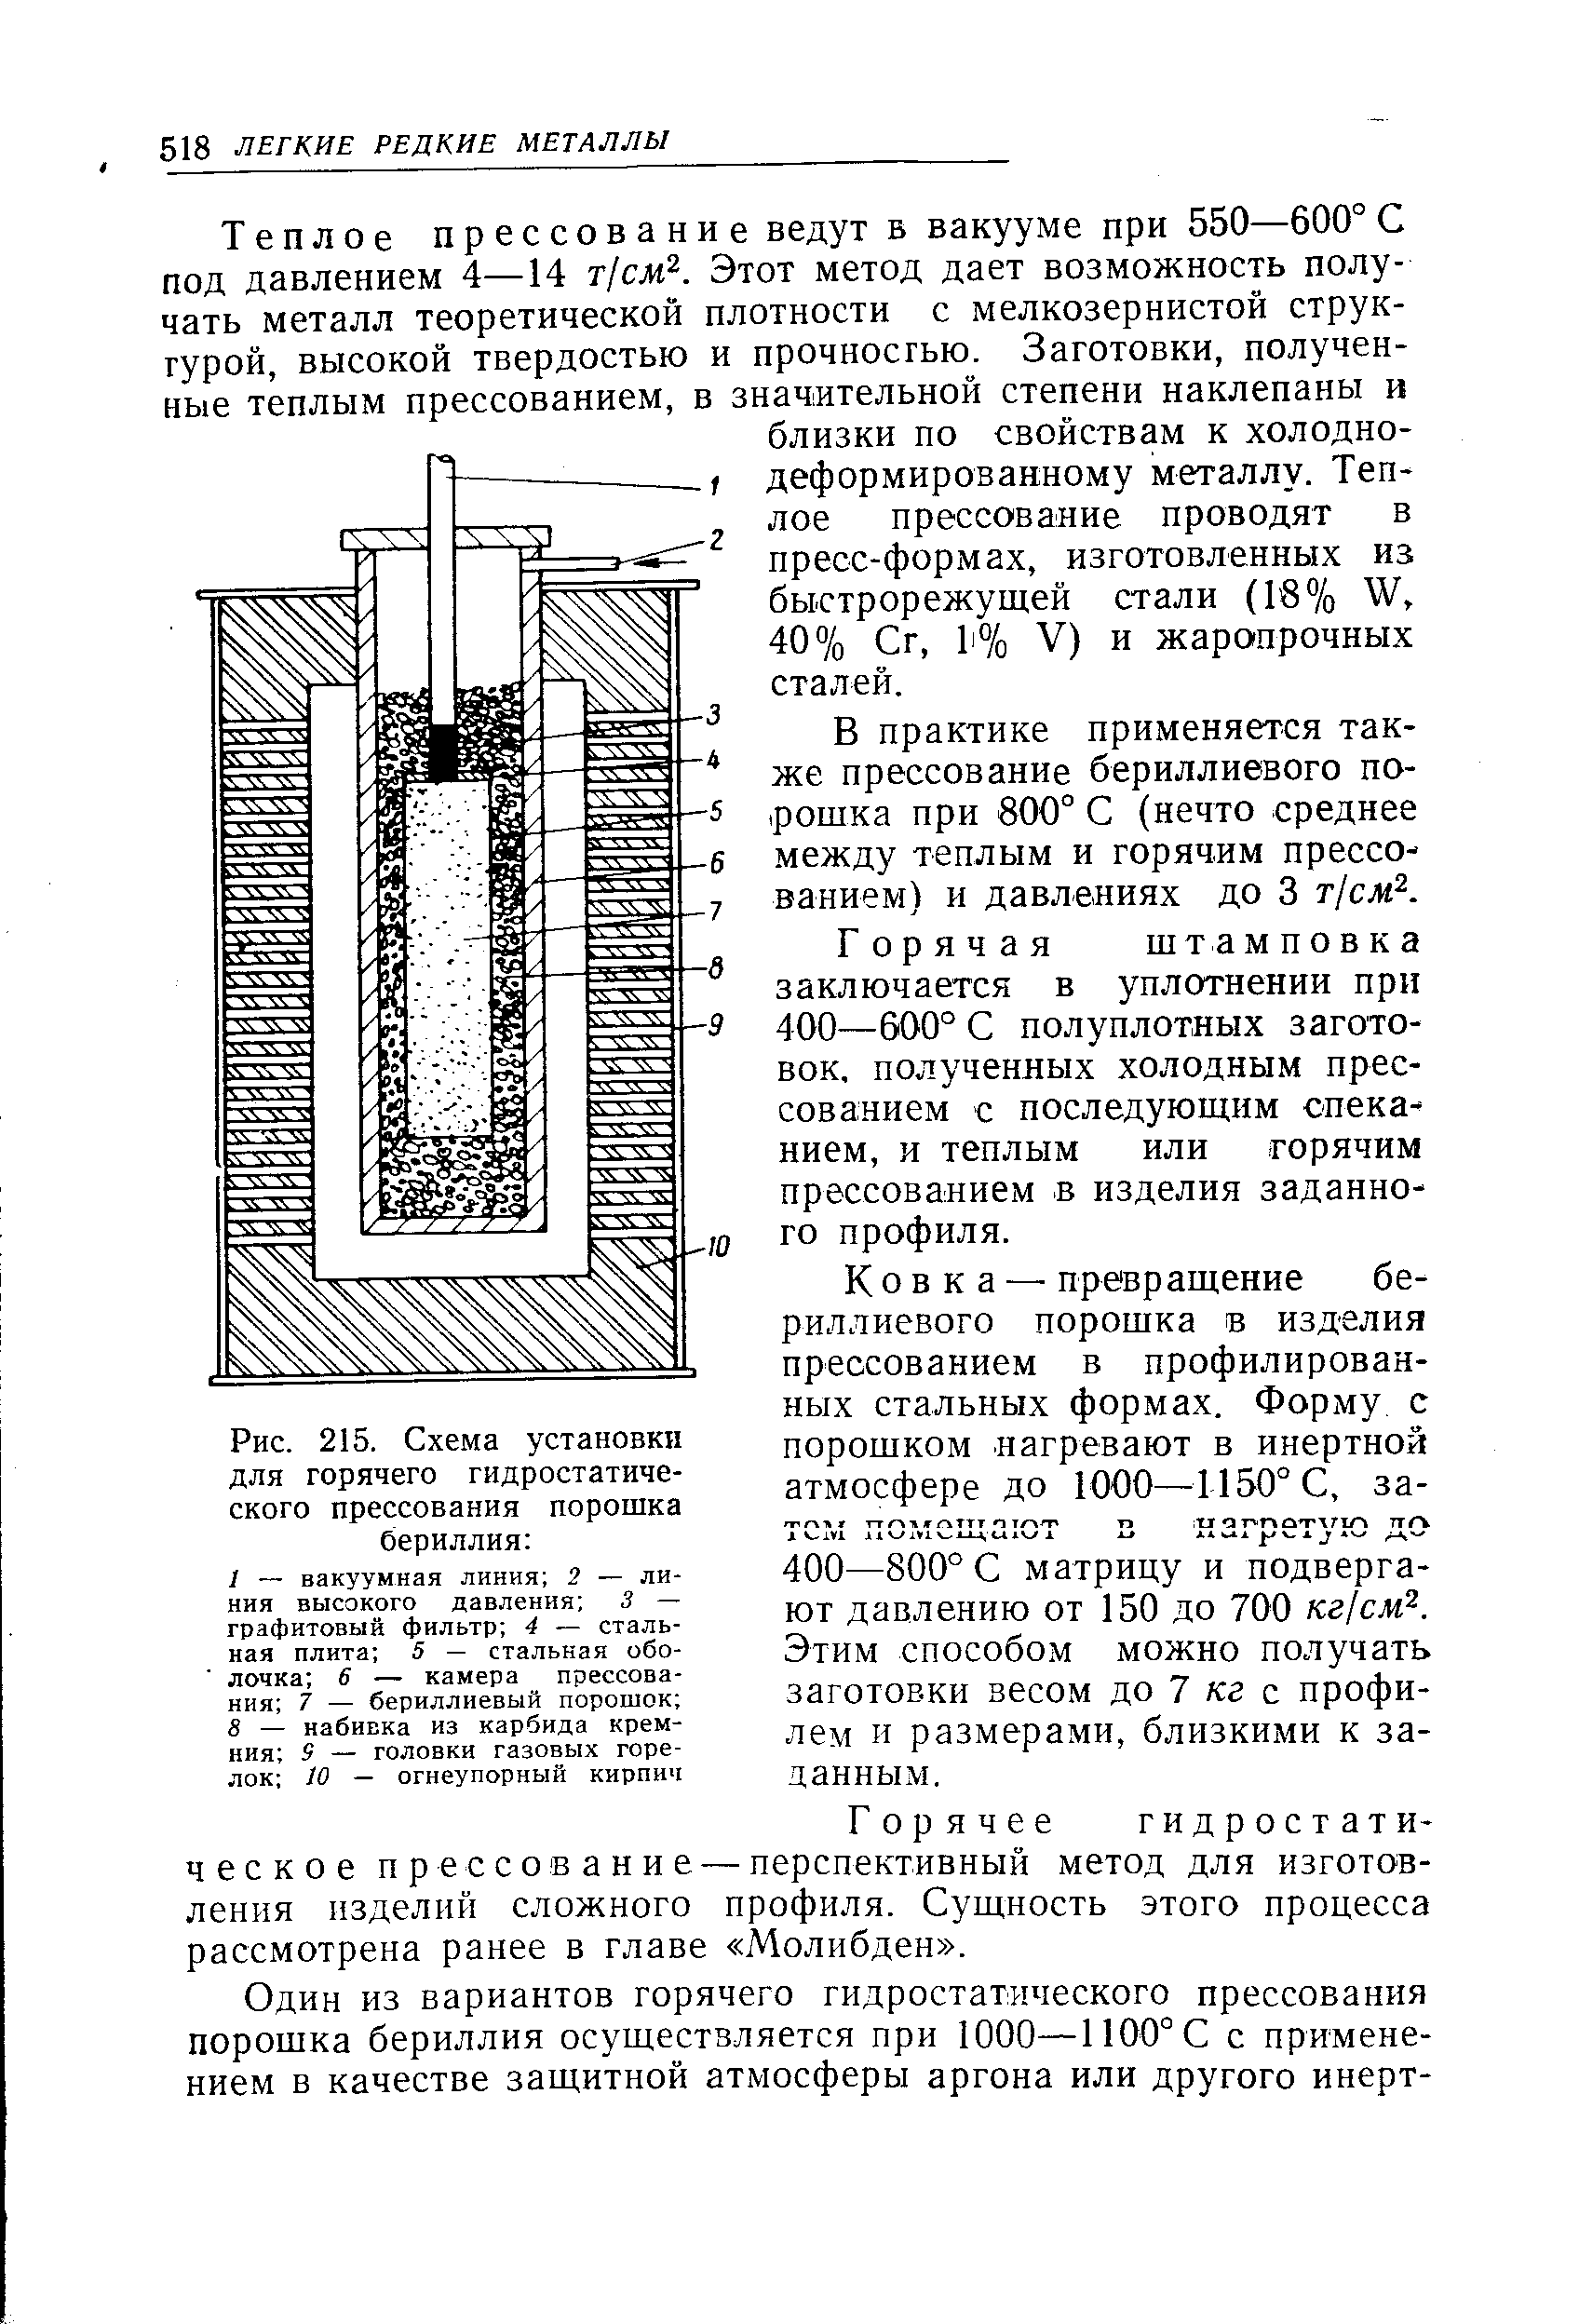 Рис. 215. Схема установки для горячего гидростатического прессования порошка бериллия 
